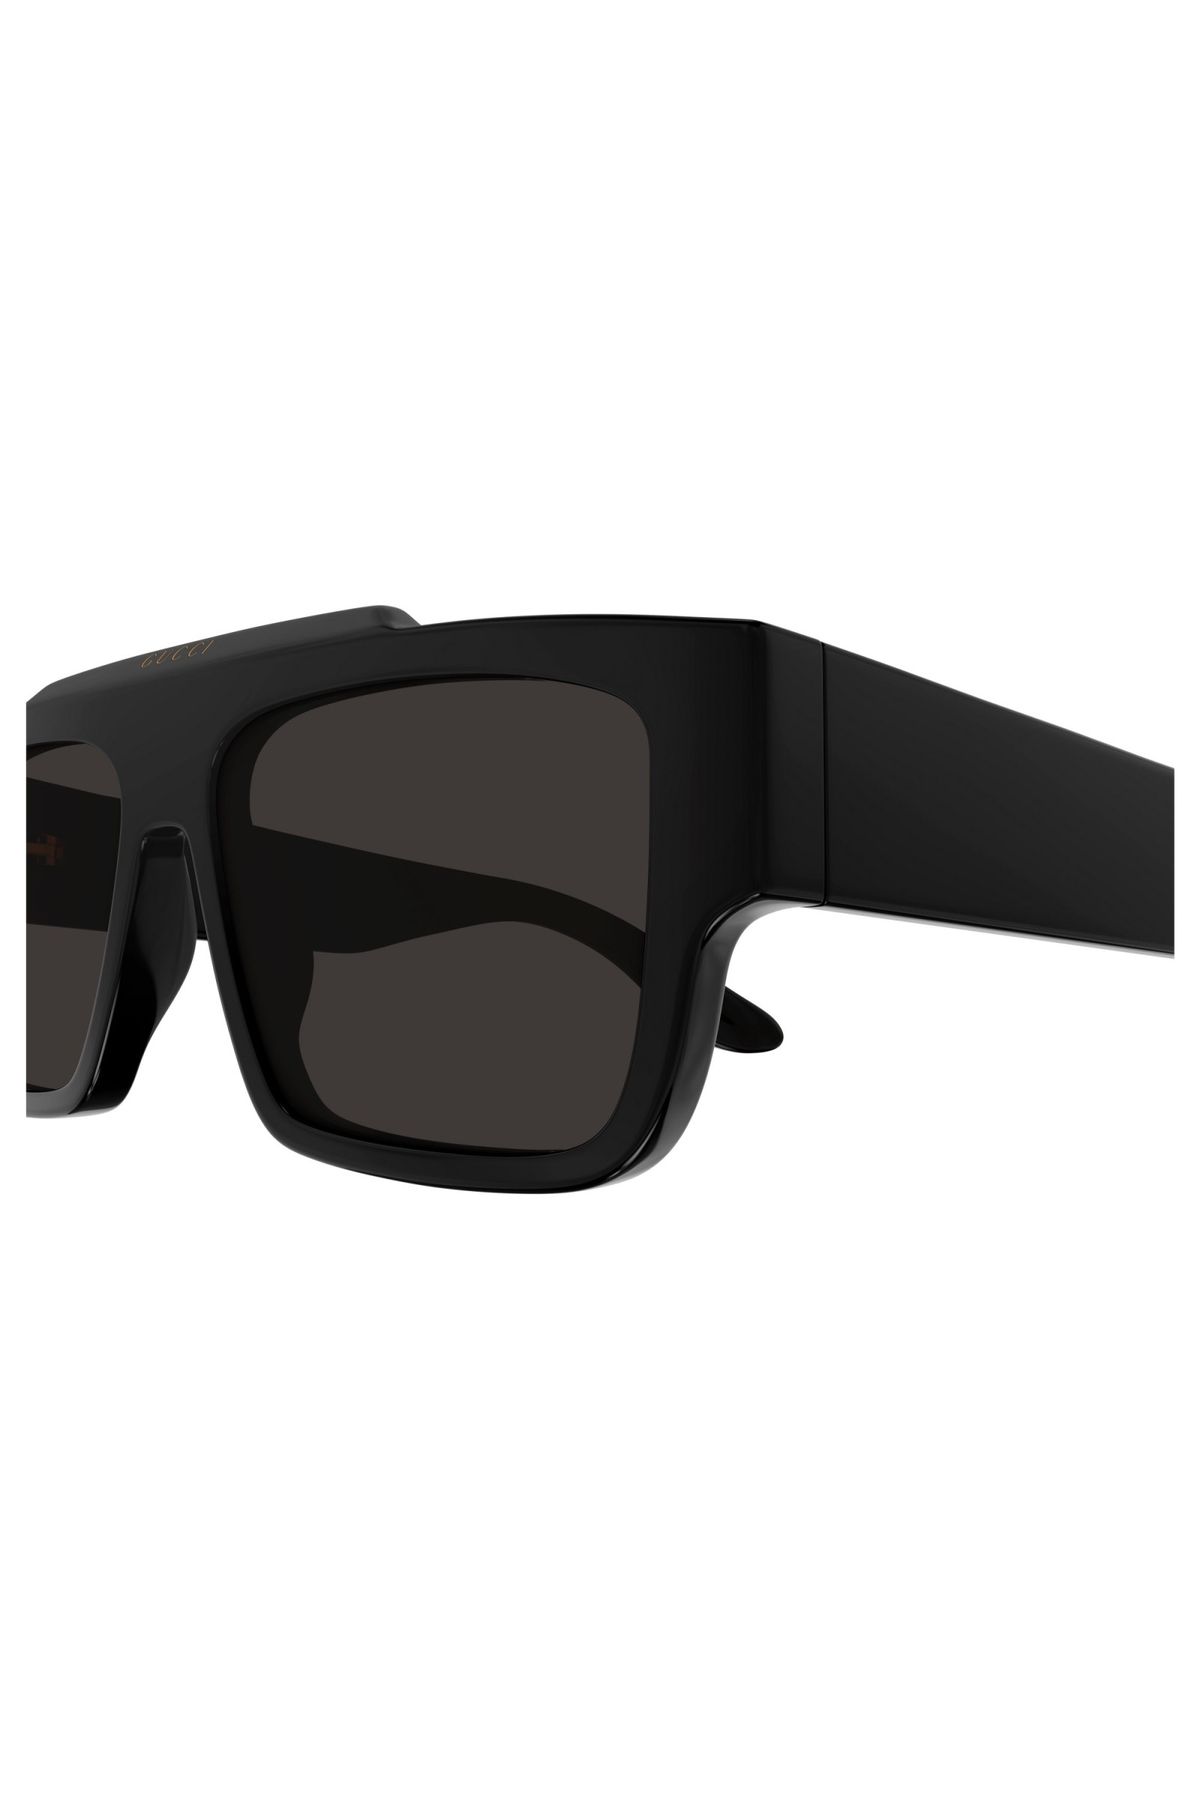 Gucci GG1460S001 Unisex Güneş Gözlüğü Siyah Kemik Çerçeve Füme Lens UV400